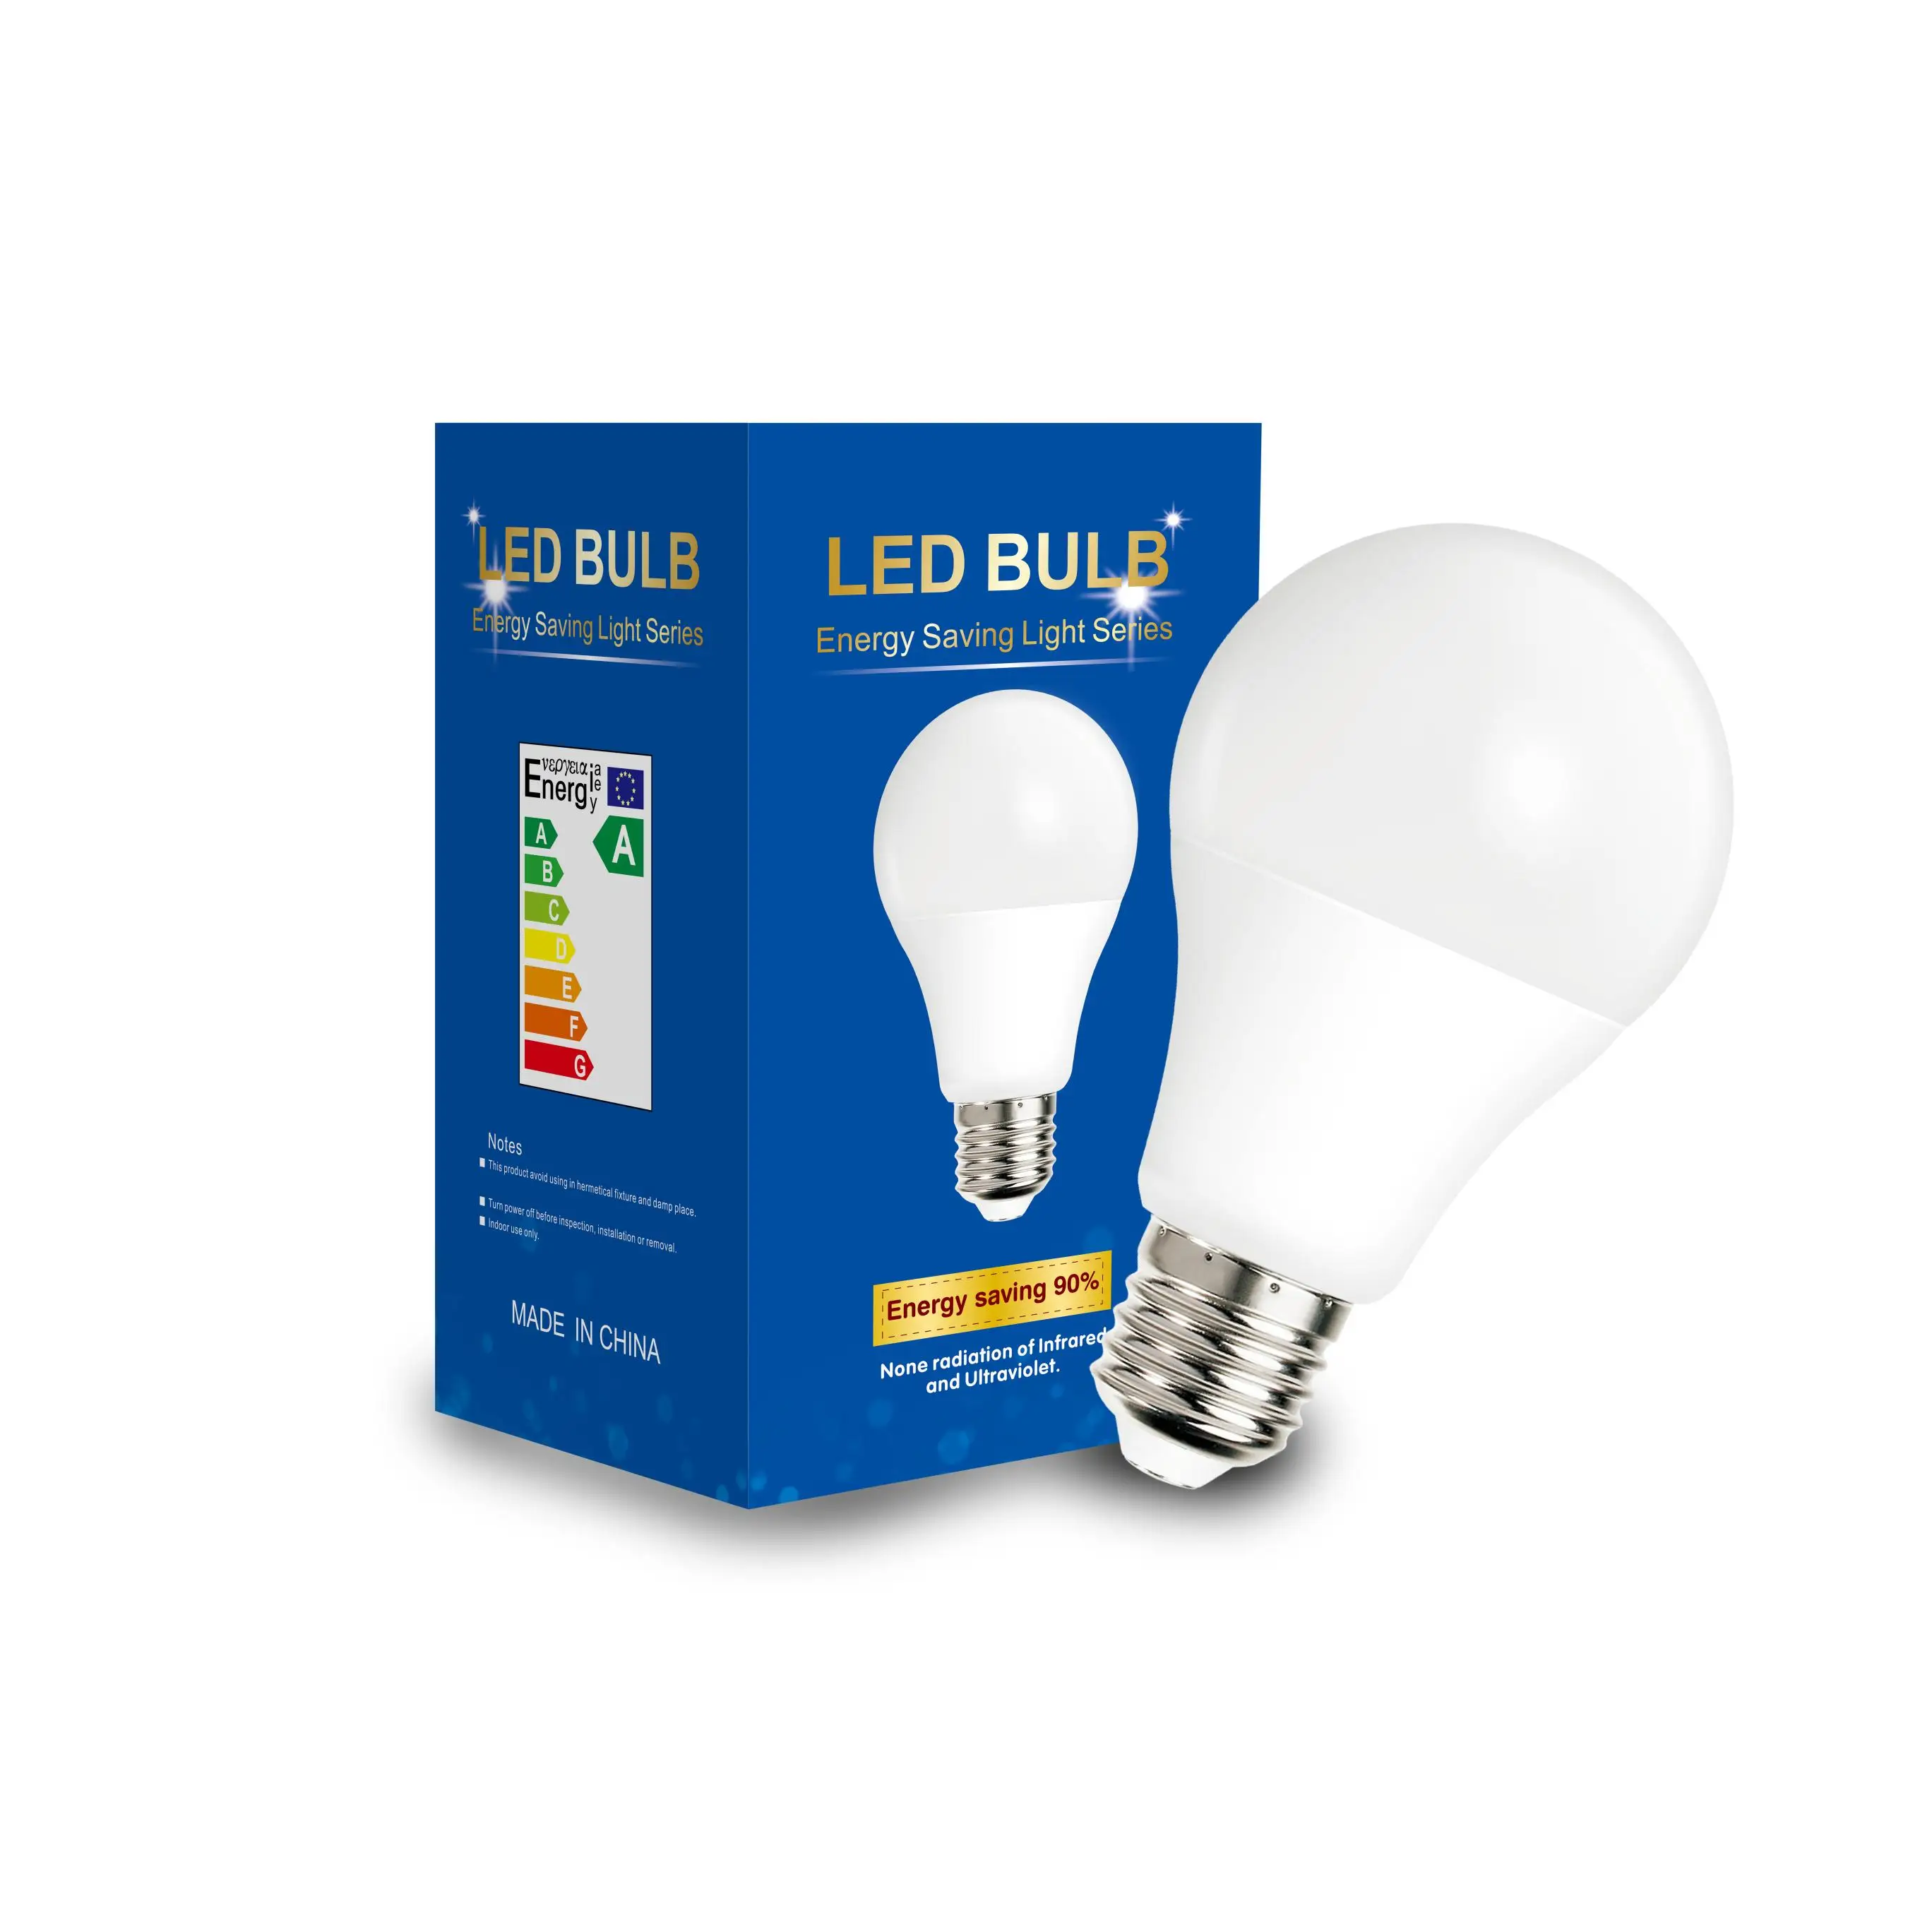 Afkorten transactie niezen Led Bulb Lamps E27 E14 Light Bulb 220v Smart Ic 3w 6w 9w 12w 15w 18w 20w  High Brightness Lampada Led Bombillas - Buy Led Bulb Light,Led Bulb Lamps  E27 E14 Light